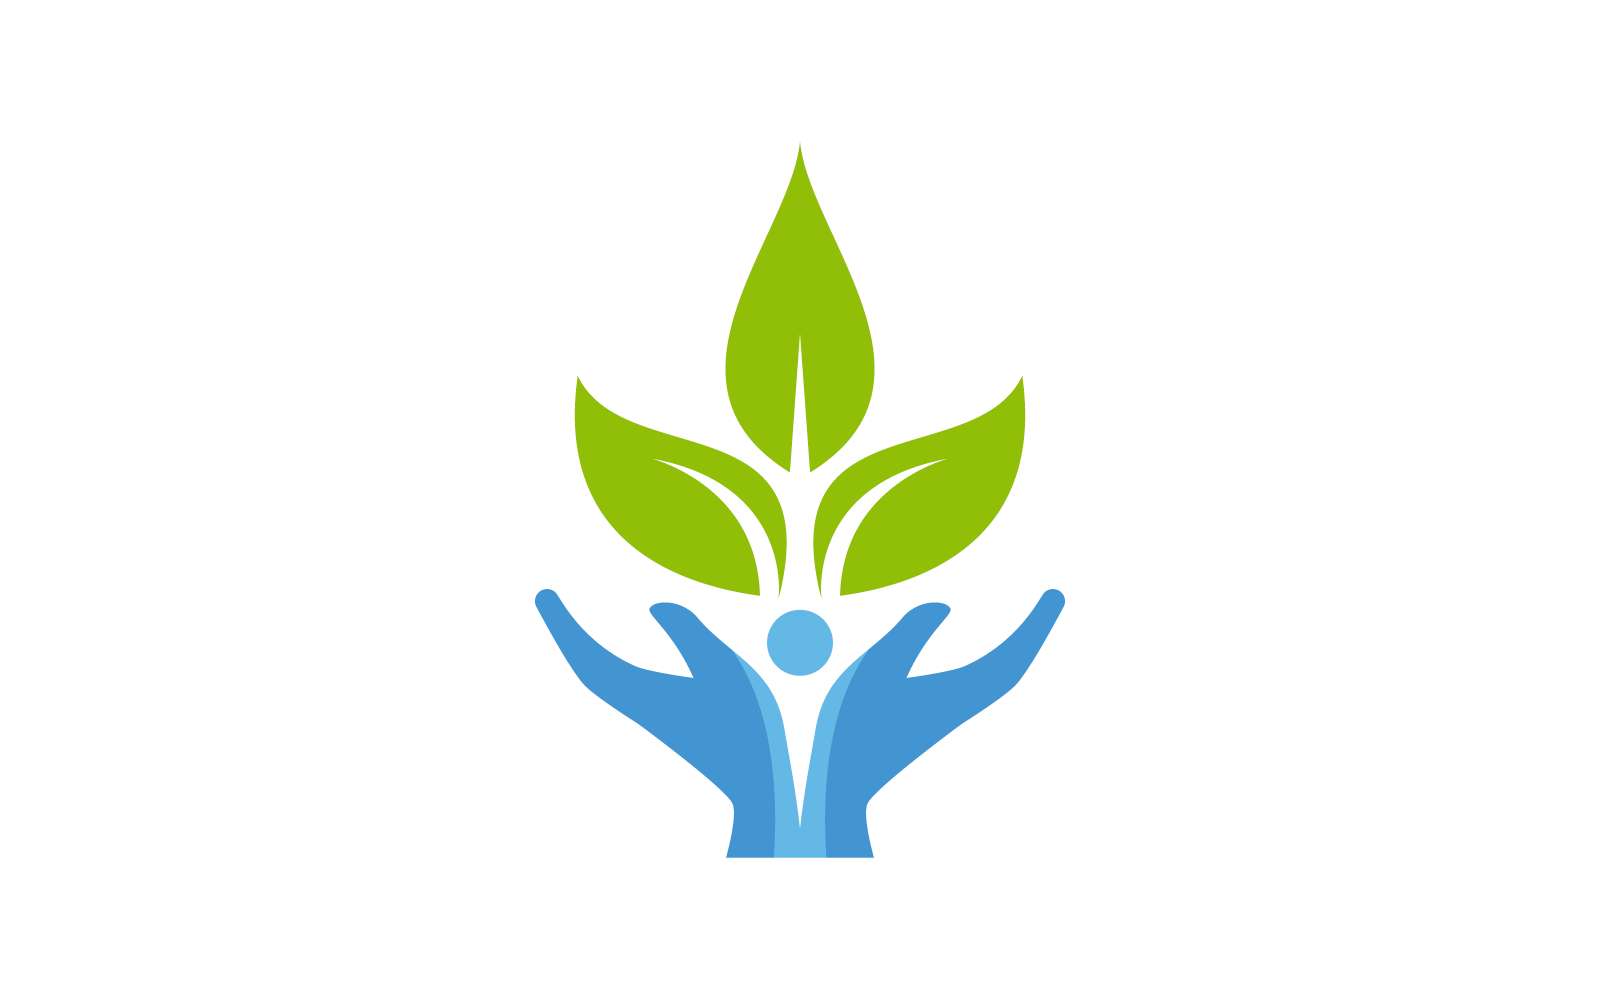 Projekt logo ilustracji dłoni i liści